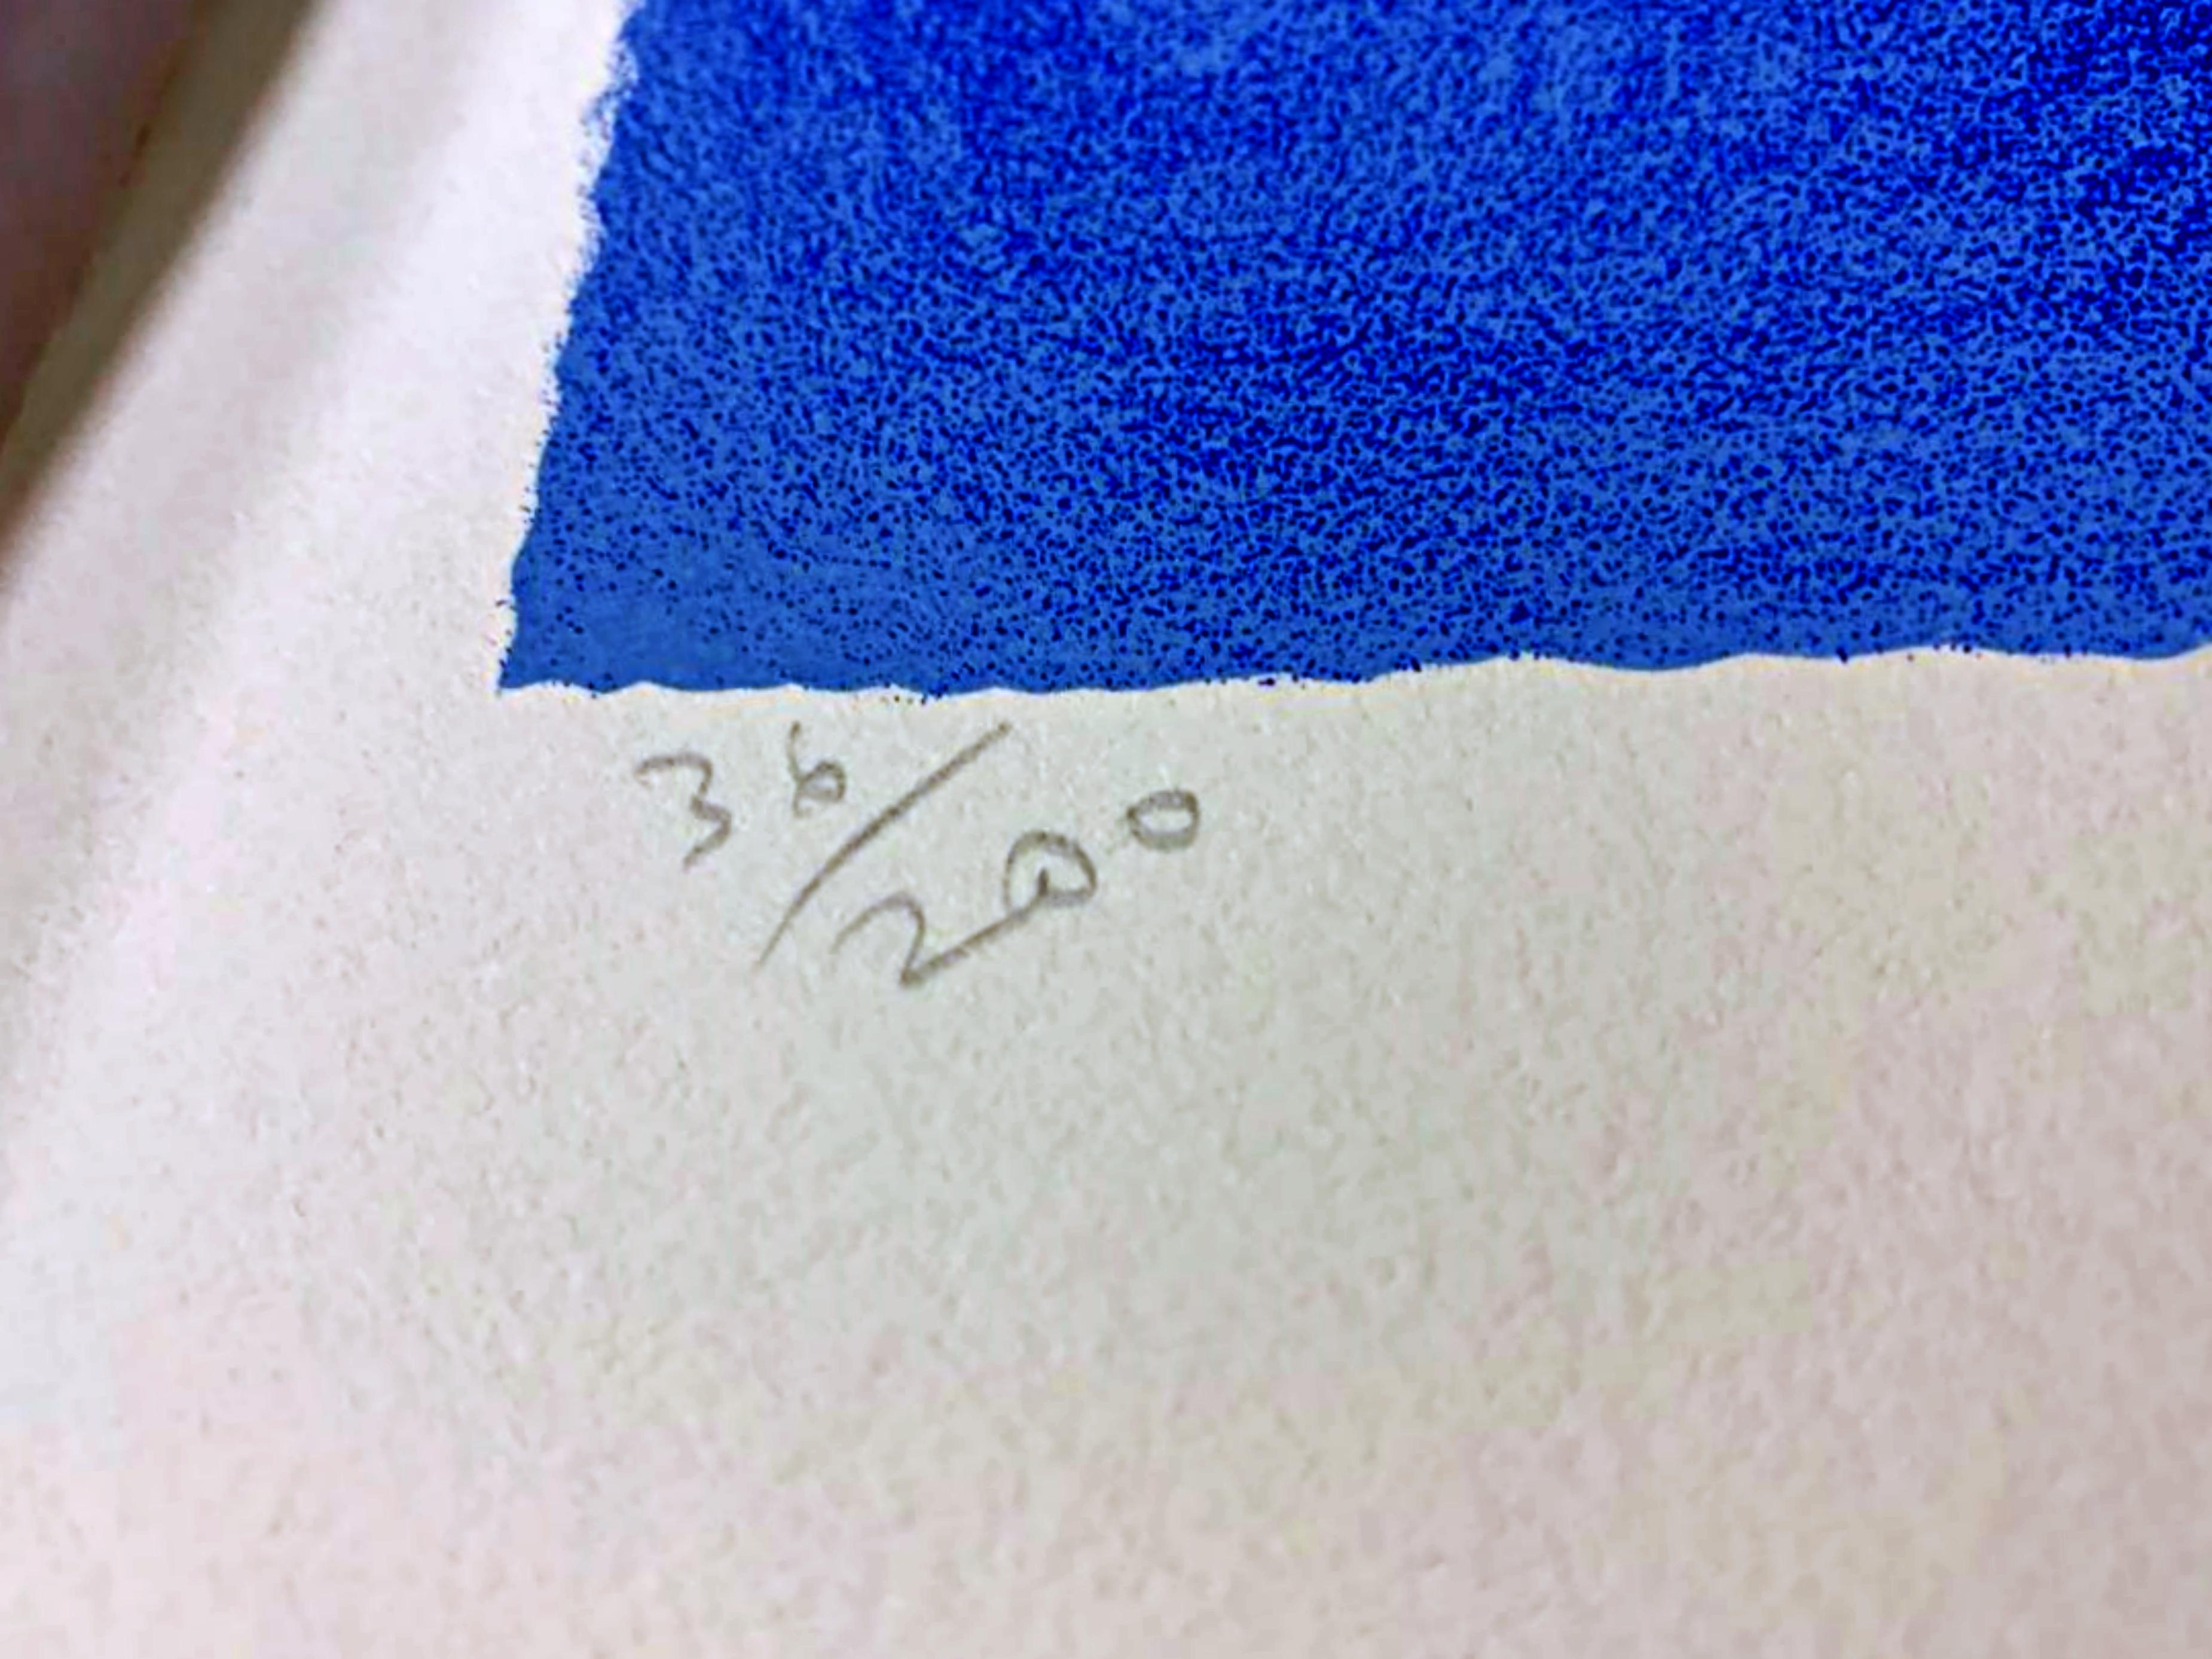 Seymour Chwast
Satchmo (Louis Armstrong), 1989
Sérigraphie sur Rives BFK
Signé à la main et numéroté 36/200 par l'artiste au recto.
44 × 30 pouces
Non encadré
Portrait en gros plan de Louis Armstrong en costume bleu, tenant une trompette et souriant